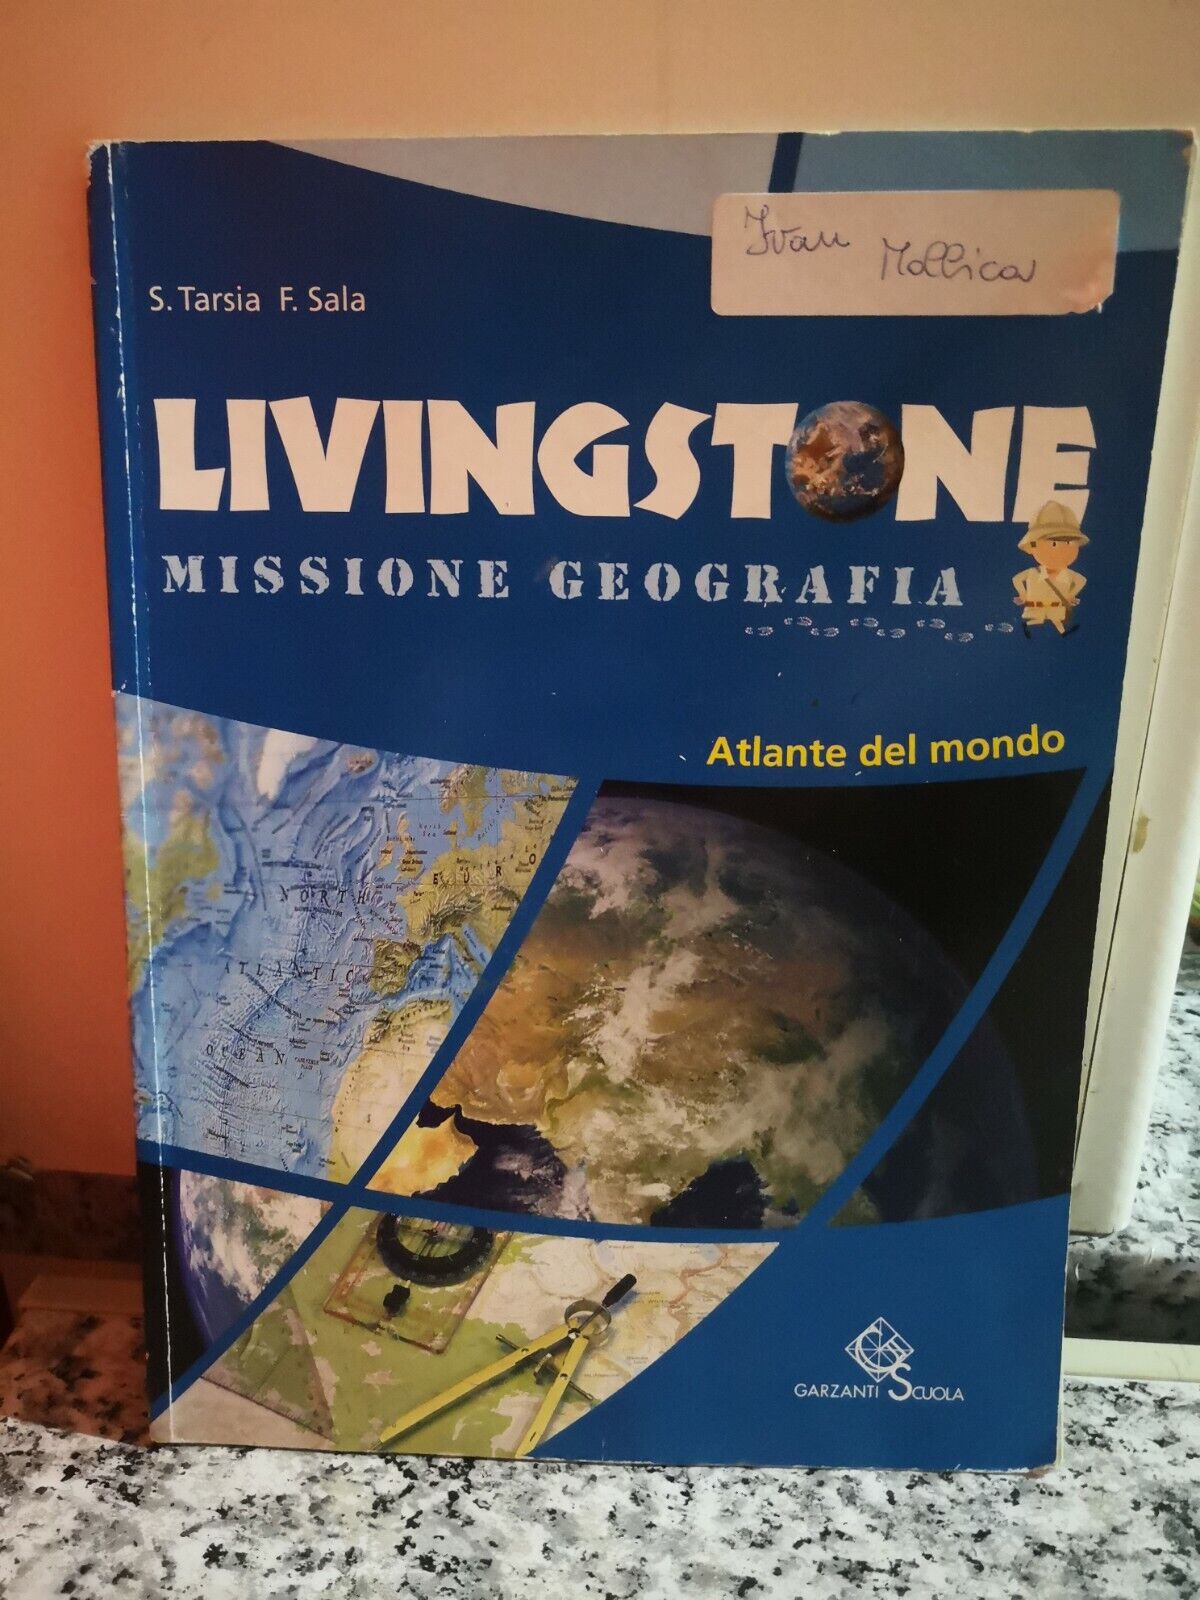  Livingstone Missione geografia di Sala F., Tarsia S., 2007, Garzanti Scuola -F libro usato